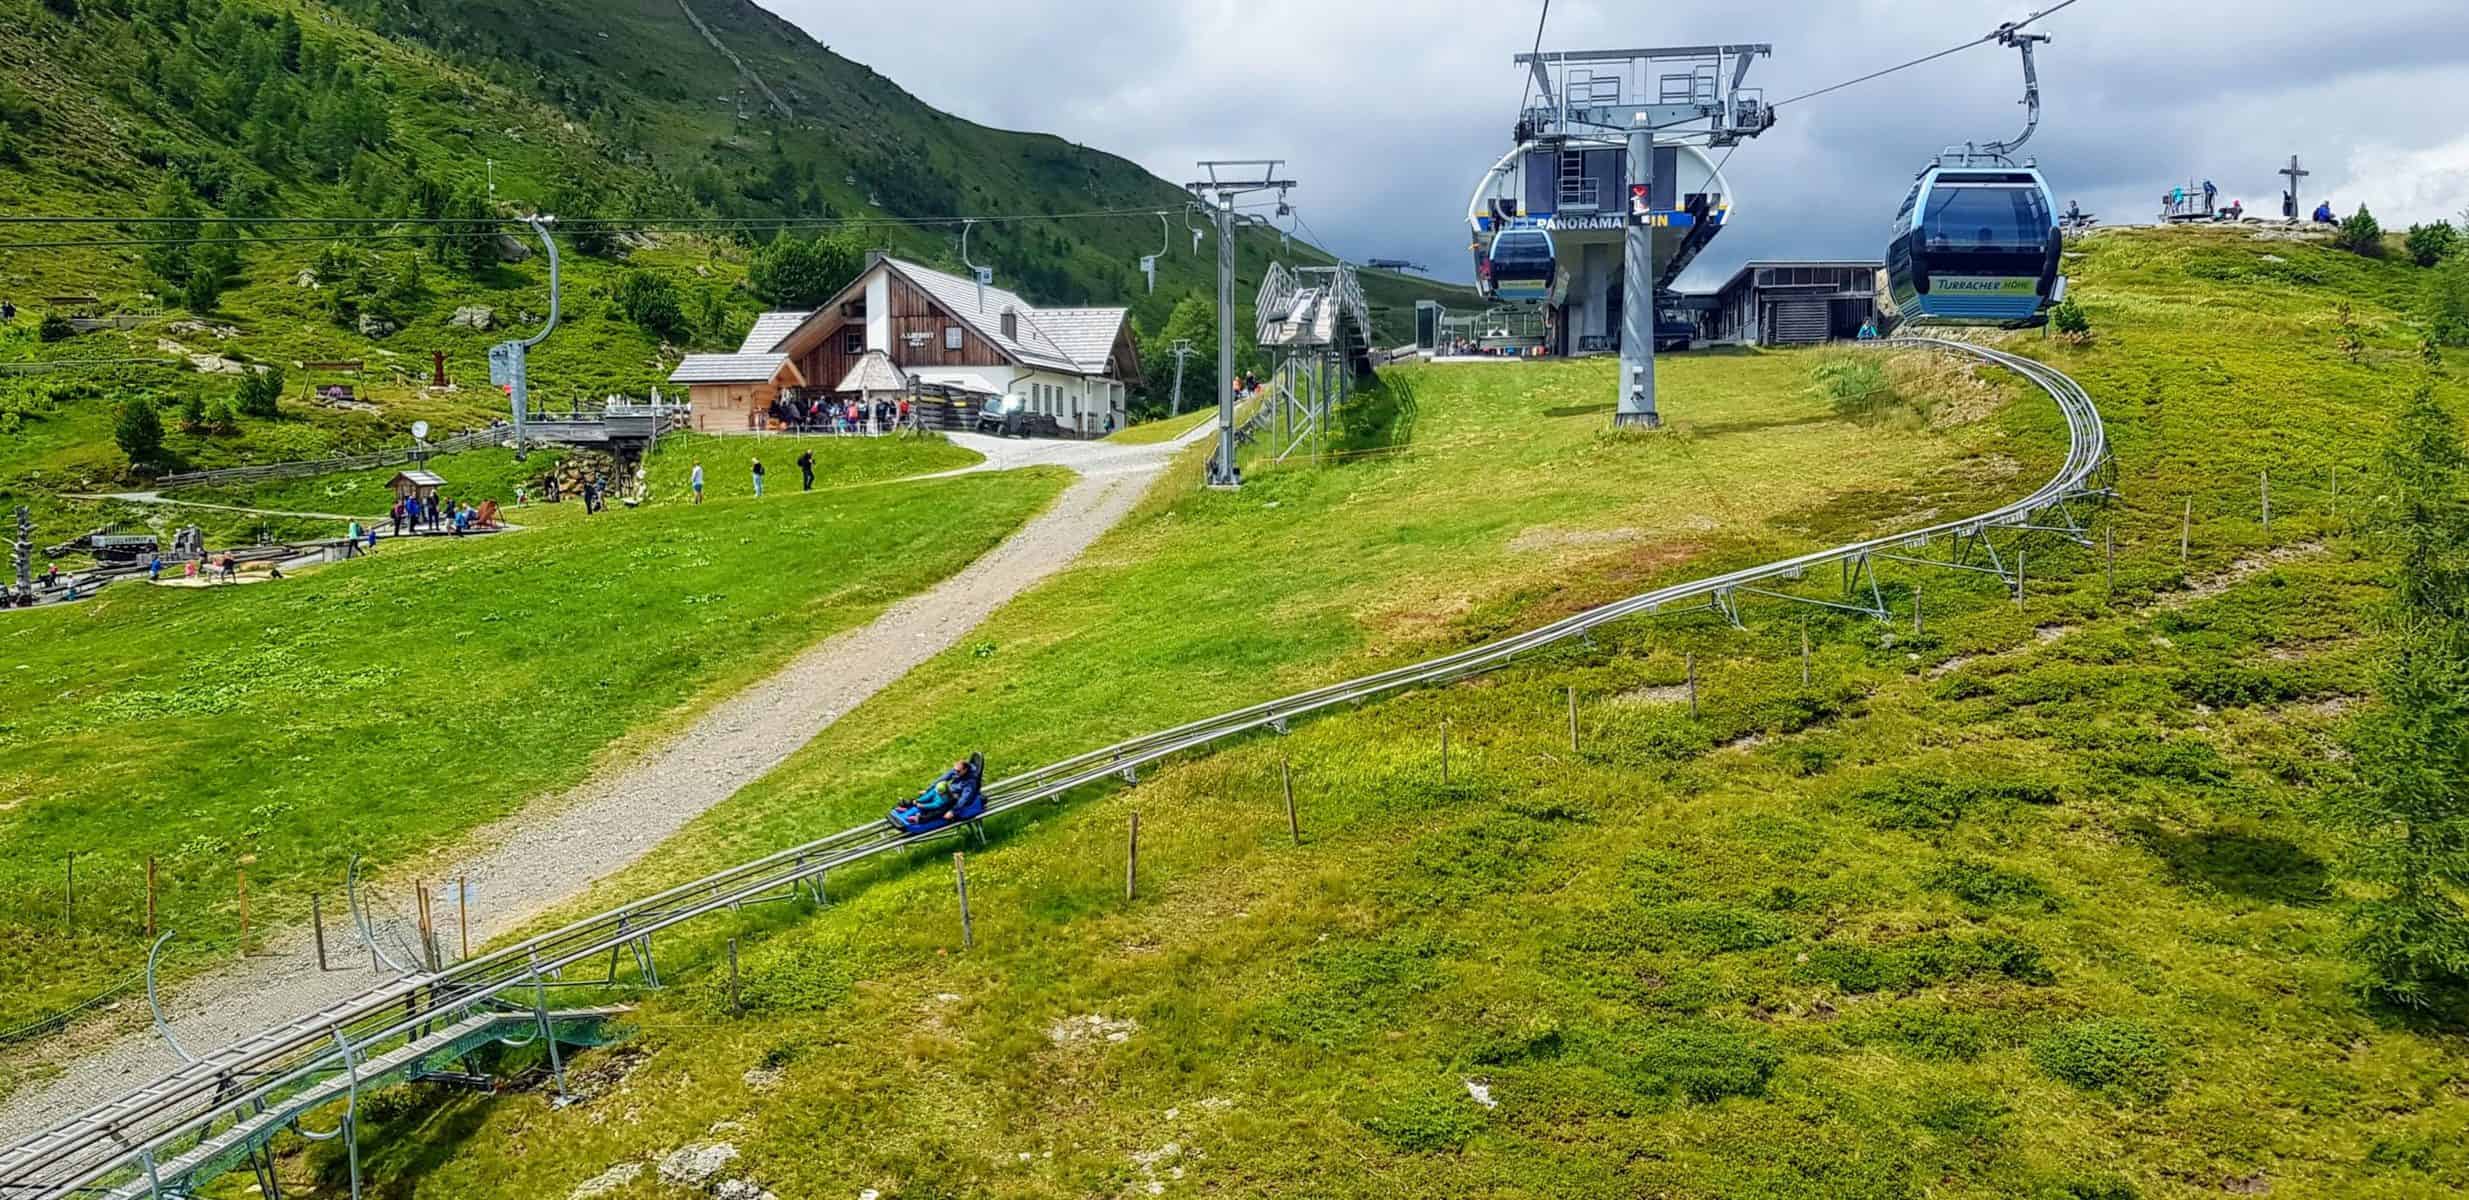 Panoramabahn Turracher Höhe mit Rodelbahn Nocky Flitzer, Kinderspielplatz Nockys Almzeit und Hütte